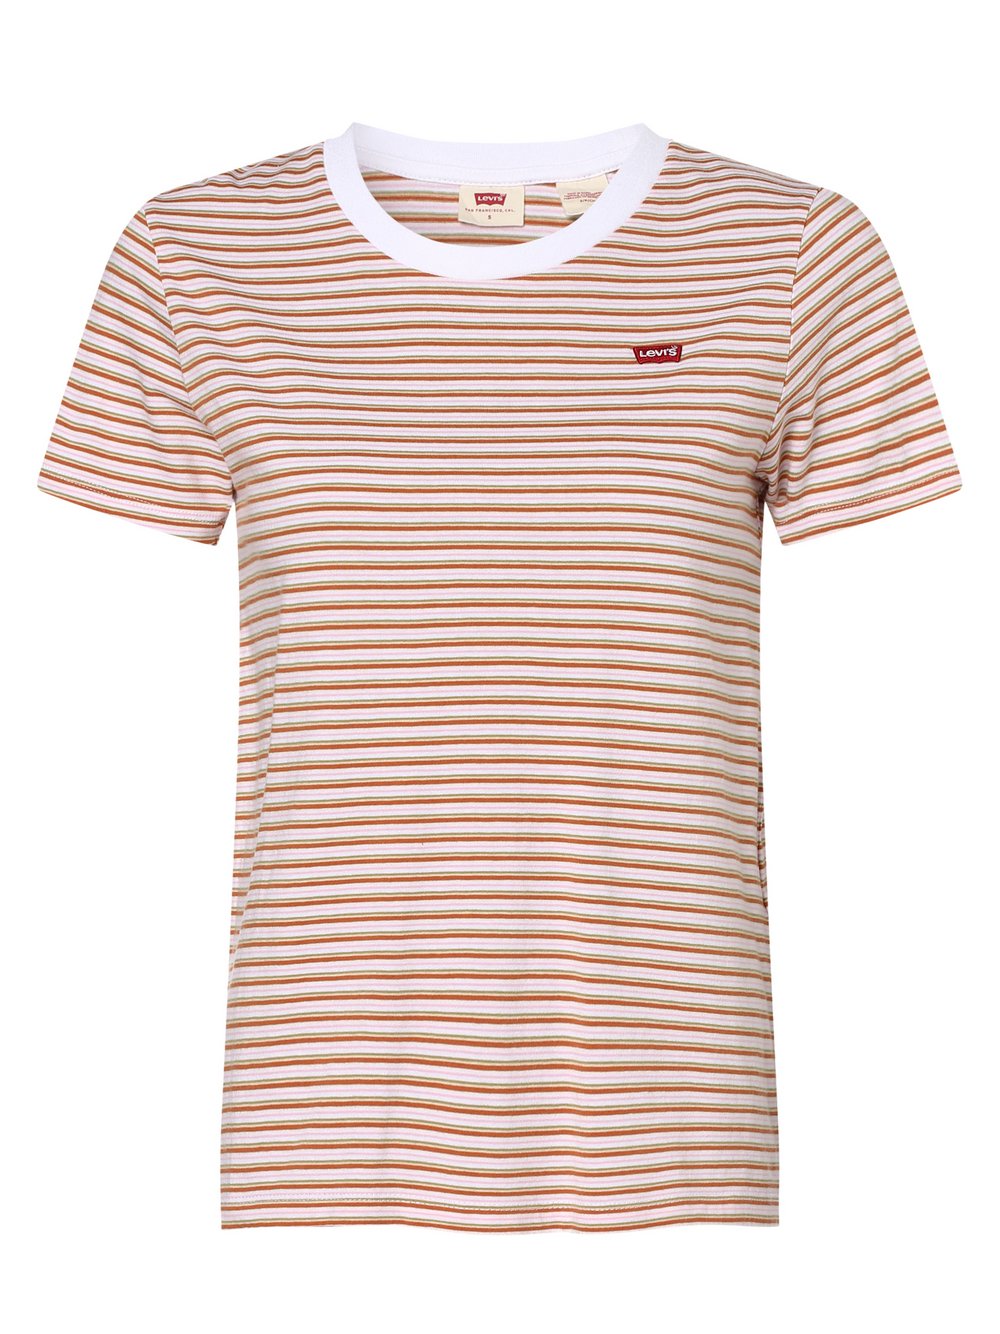 Levi's - T-shirt damski, brązowy|zielony|różowy|biały|wielokolorowy